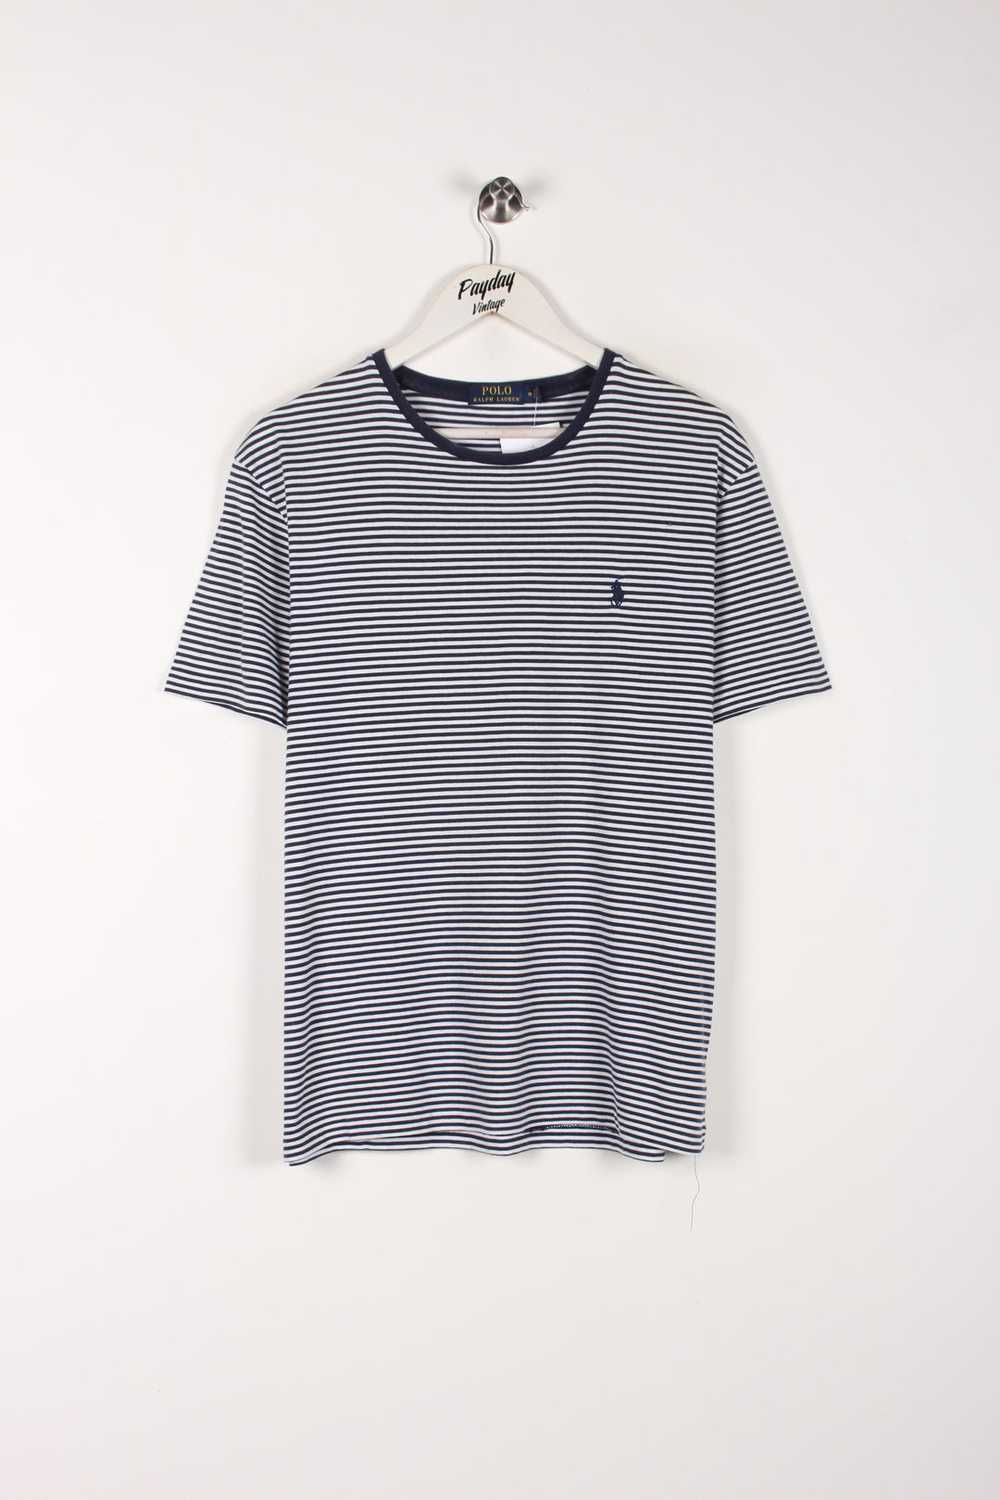 Ralph Lauren Striped T-Shirt Medium - image 1